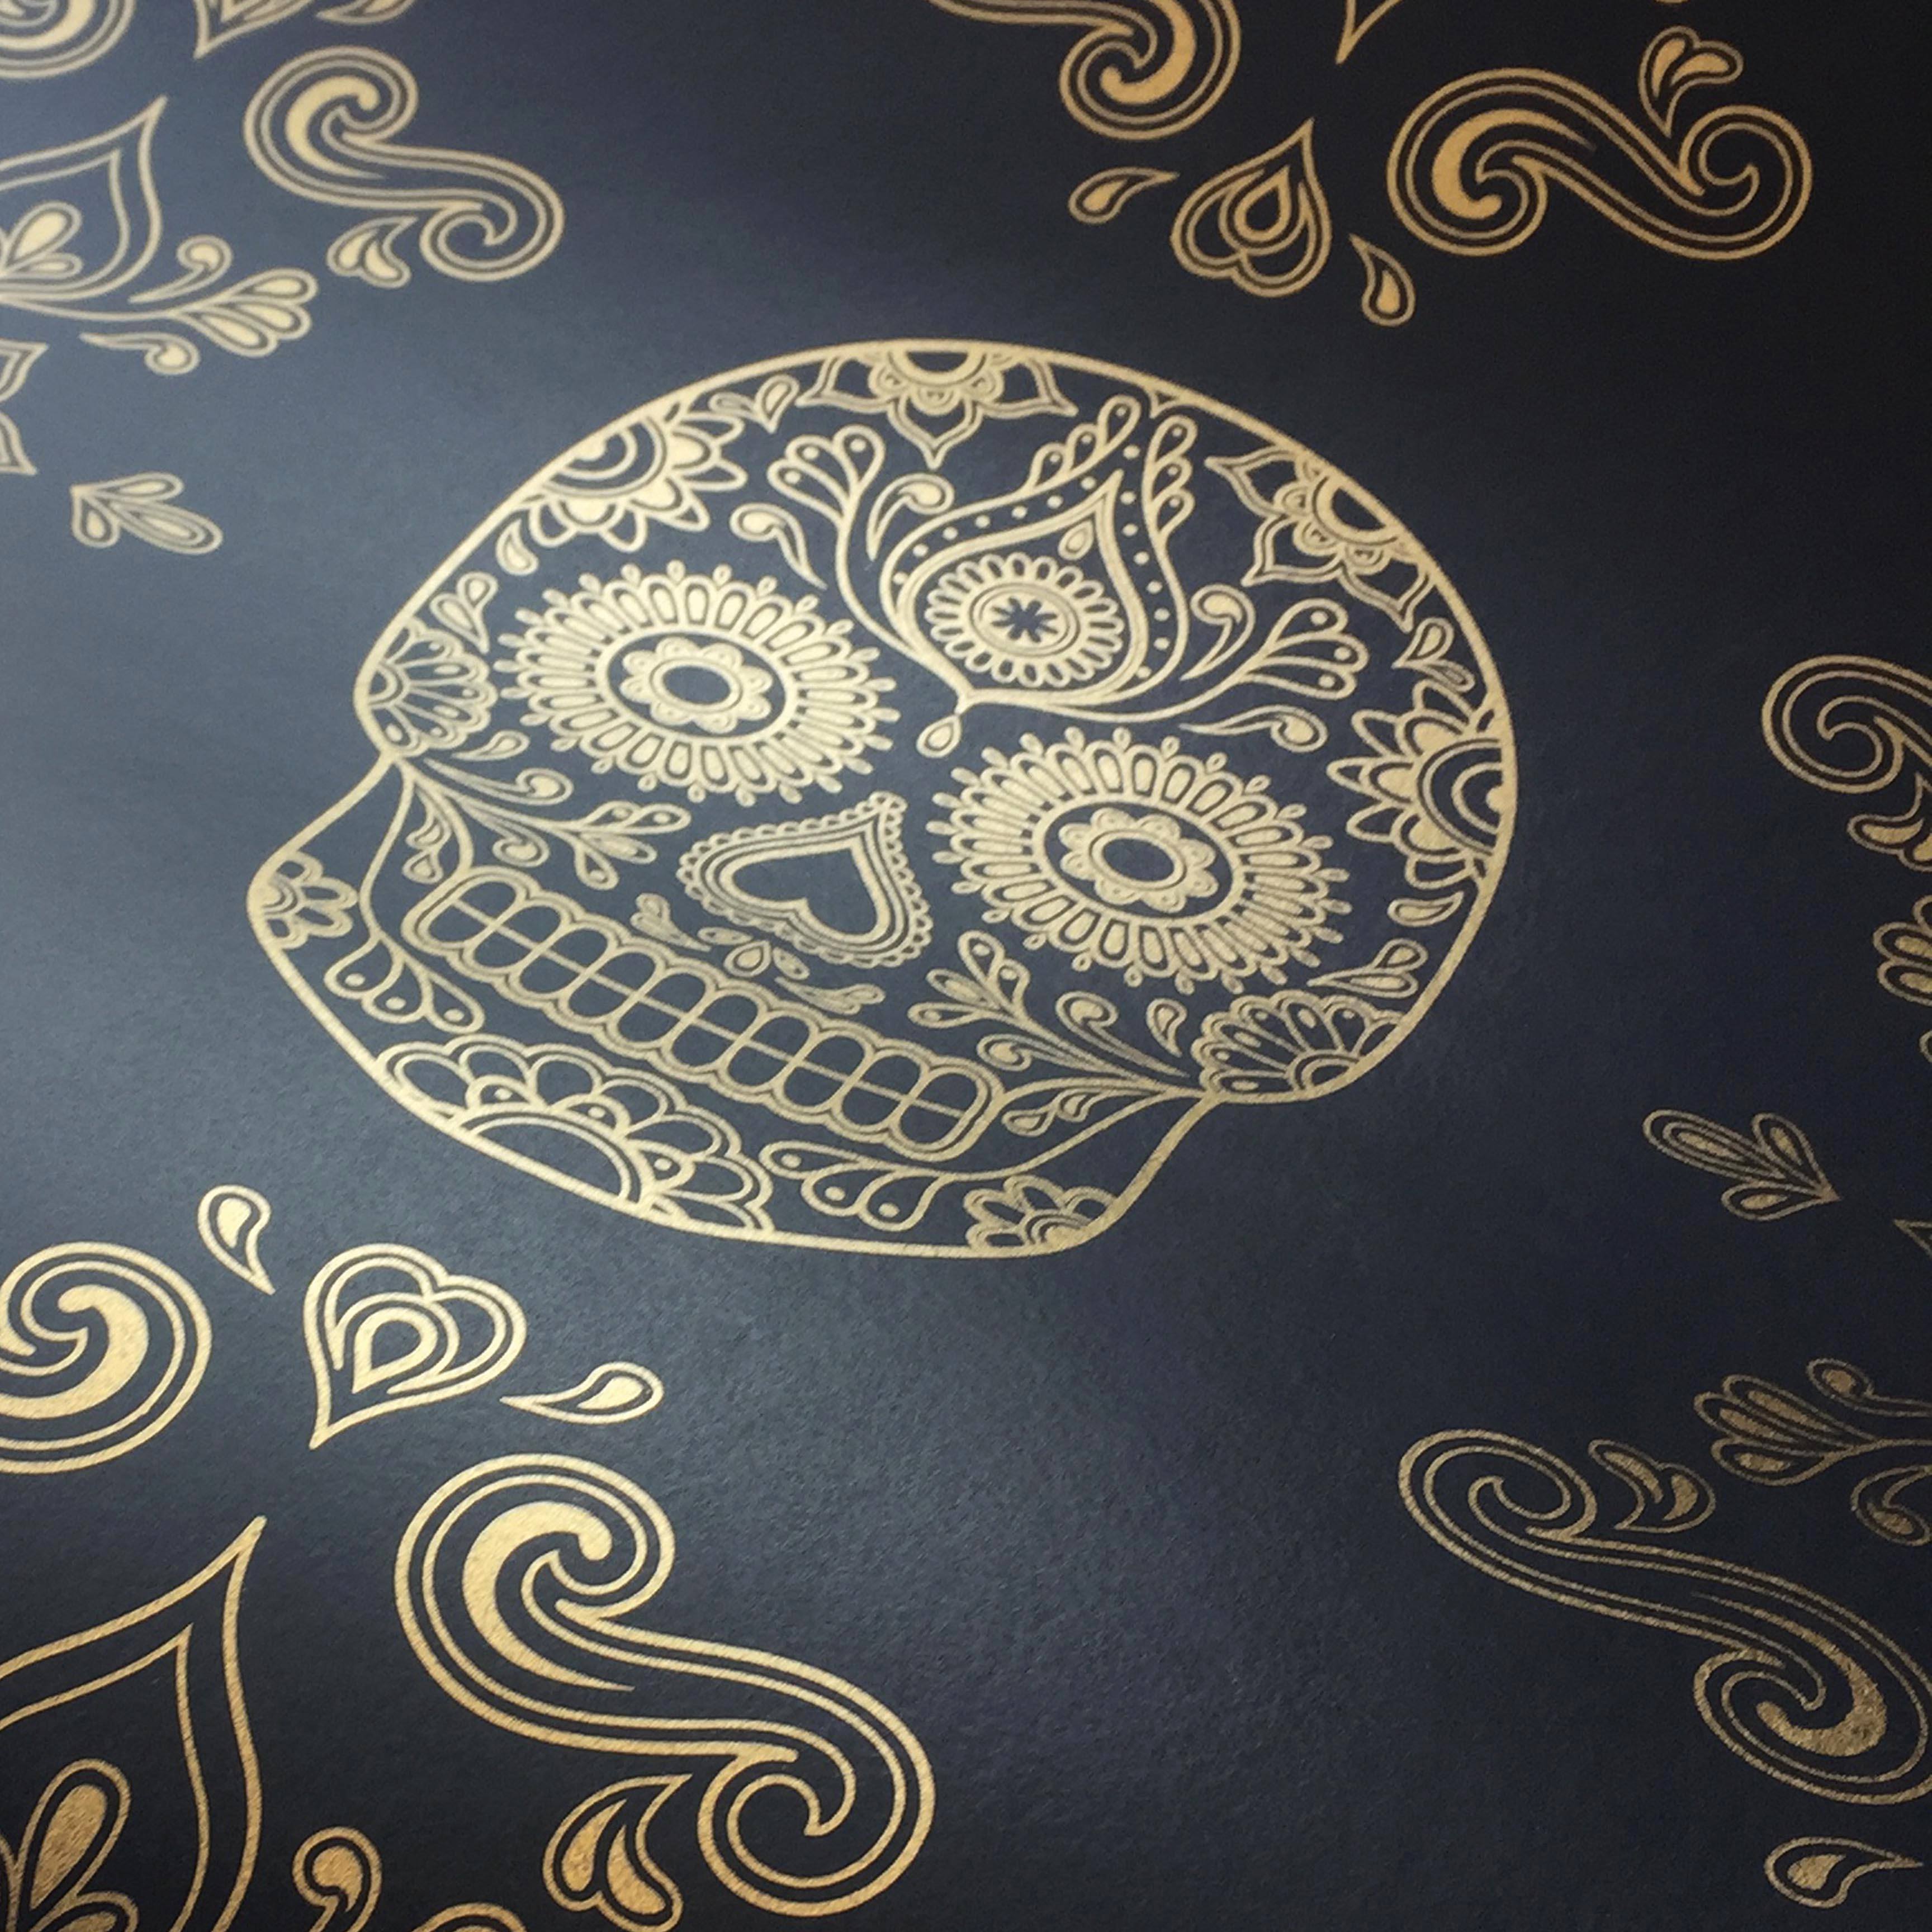 The Sugar Skull Wallpaper - Black & Gold